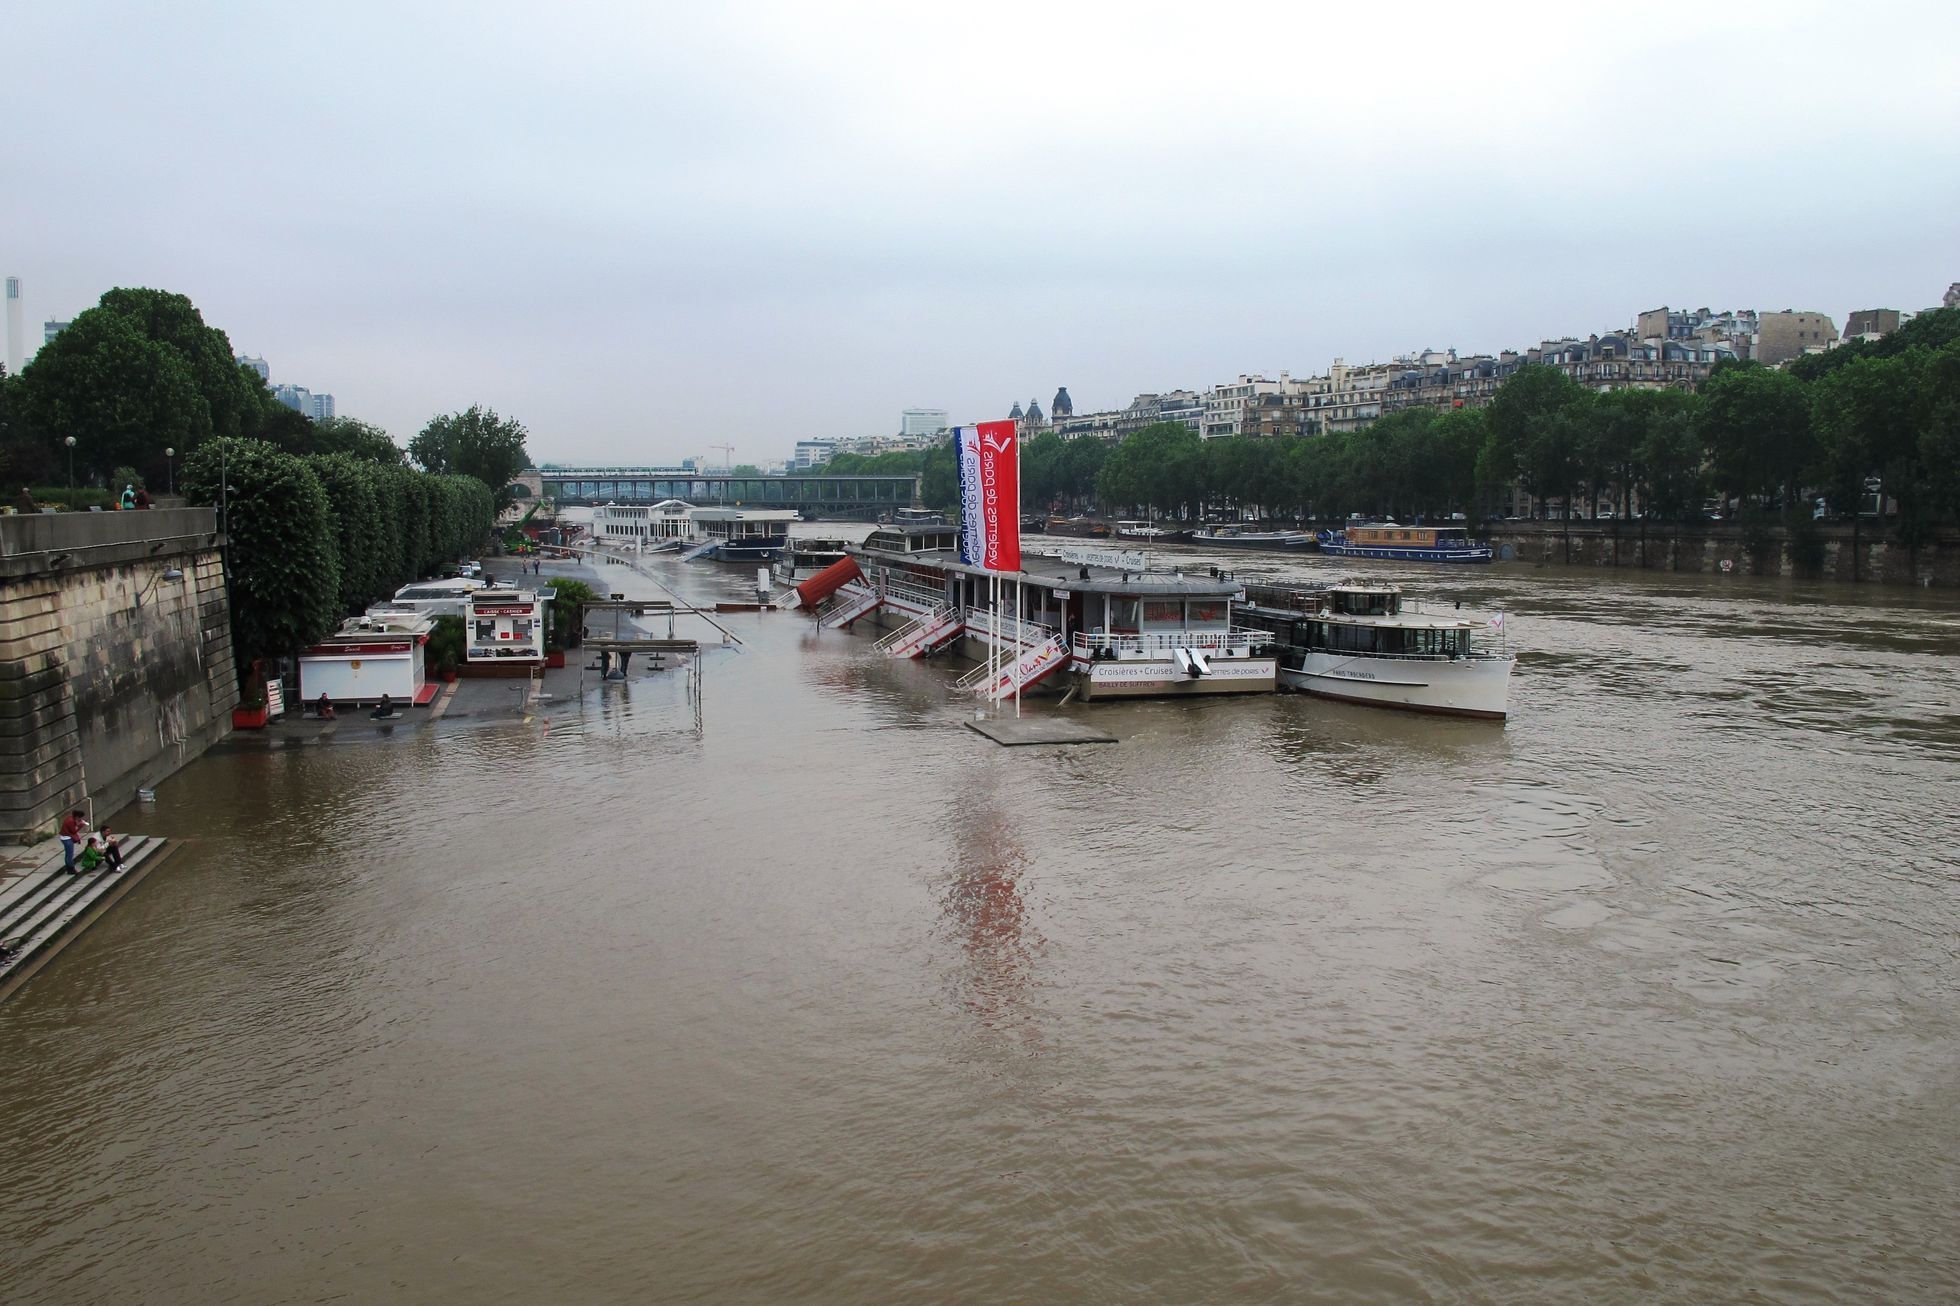 Francie - Paříž - záplavy